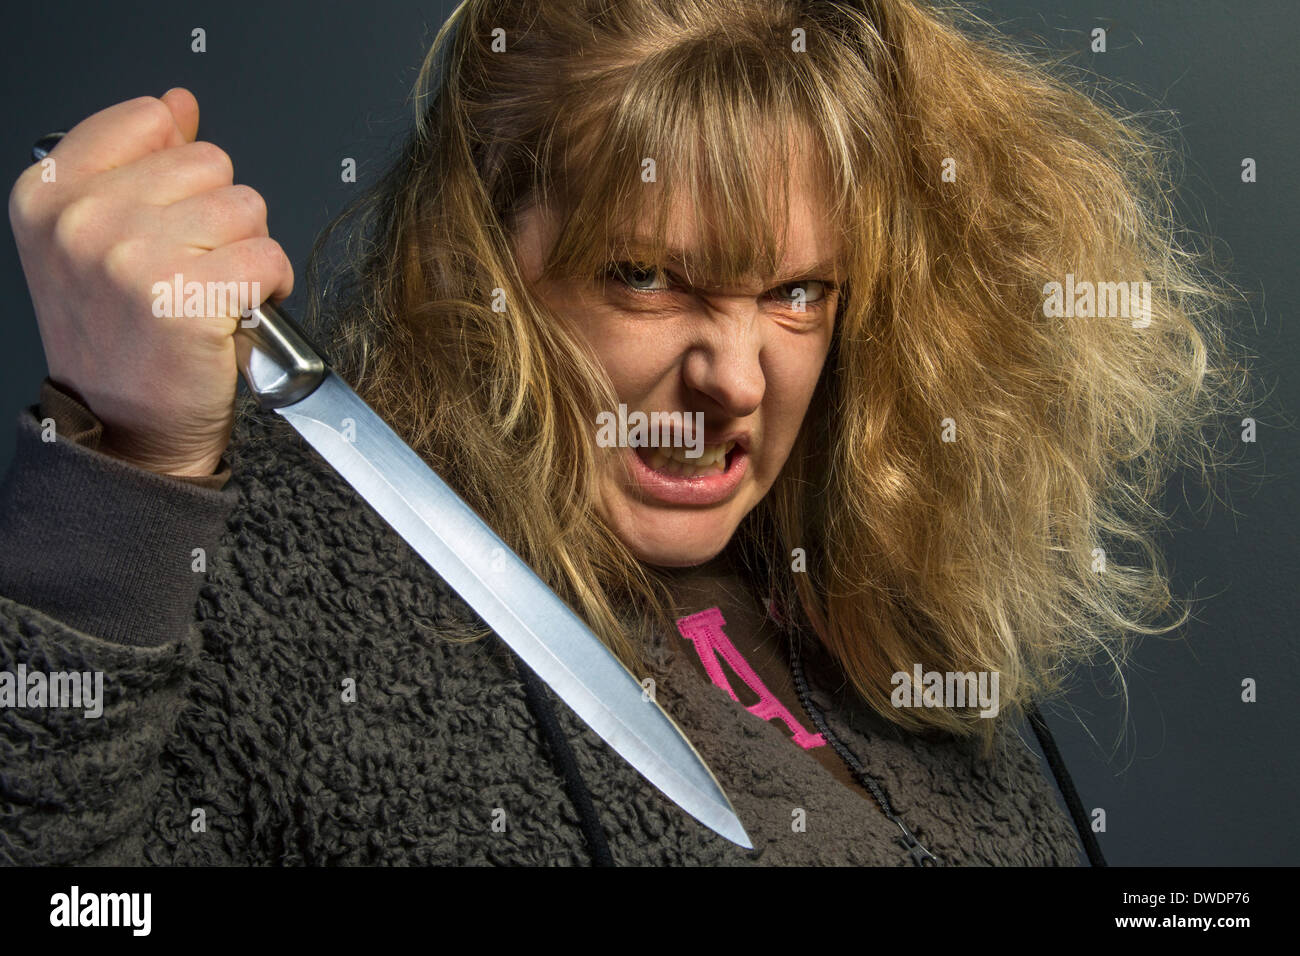 Eine verrückte psychotischen junge Frau - häusliche Gewalt Stockfoto